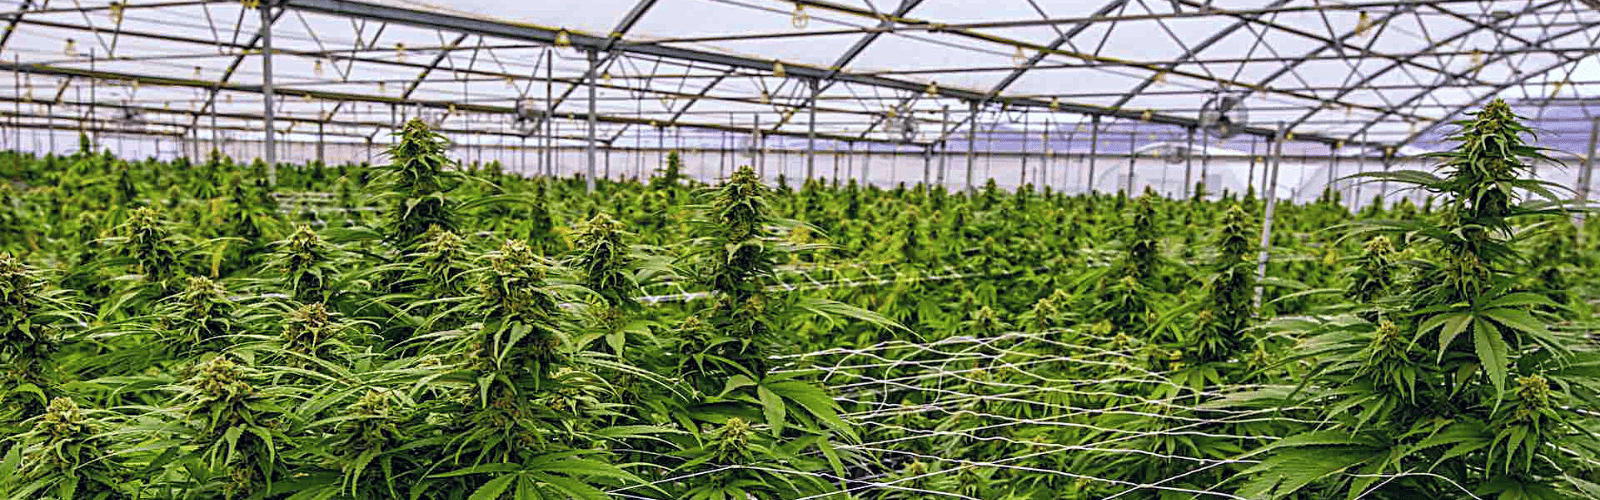 Выращивание конопли scrog семена марихуаны с тгк от 25